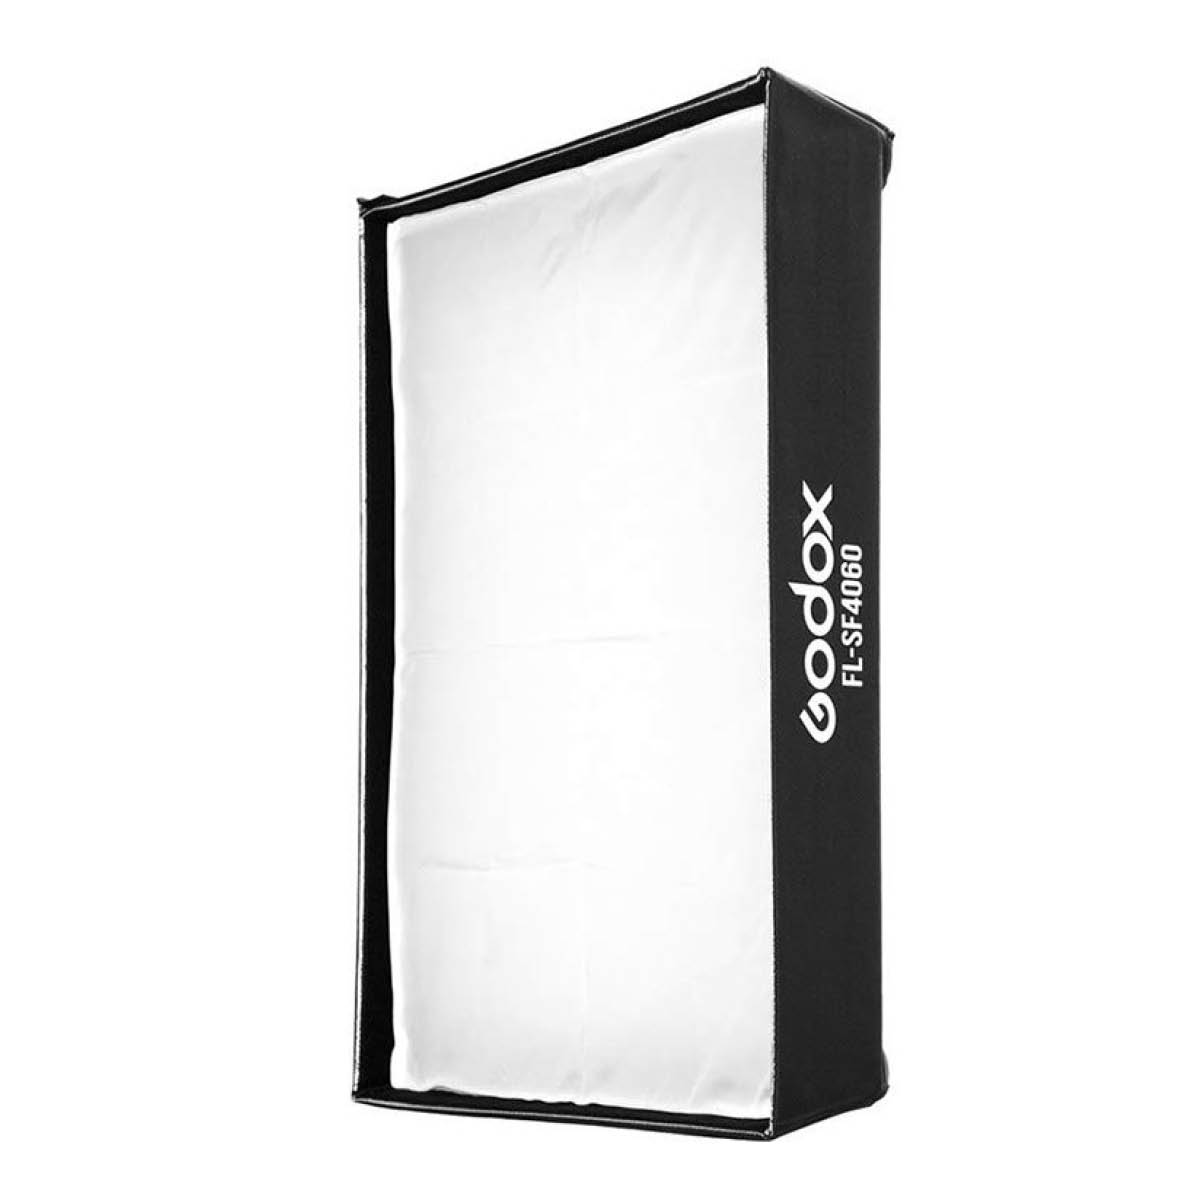 Godox Softbox und Grid für Soft LED Leuchte FL 100